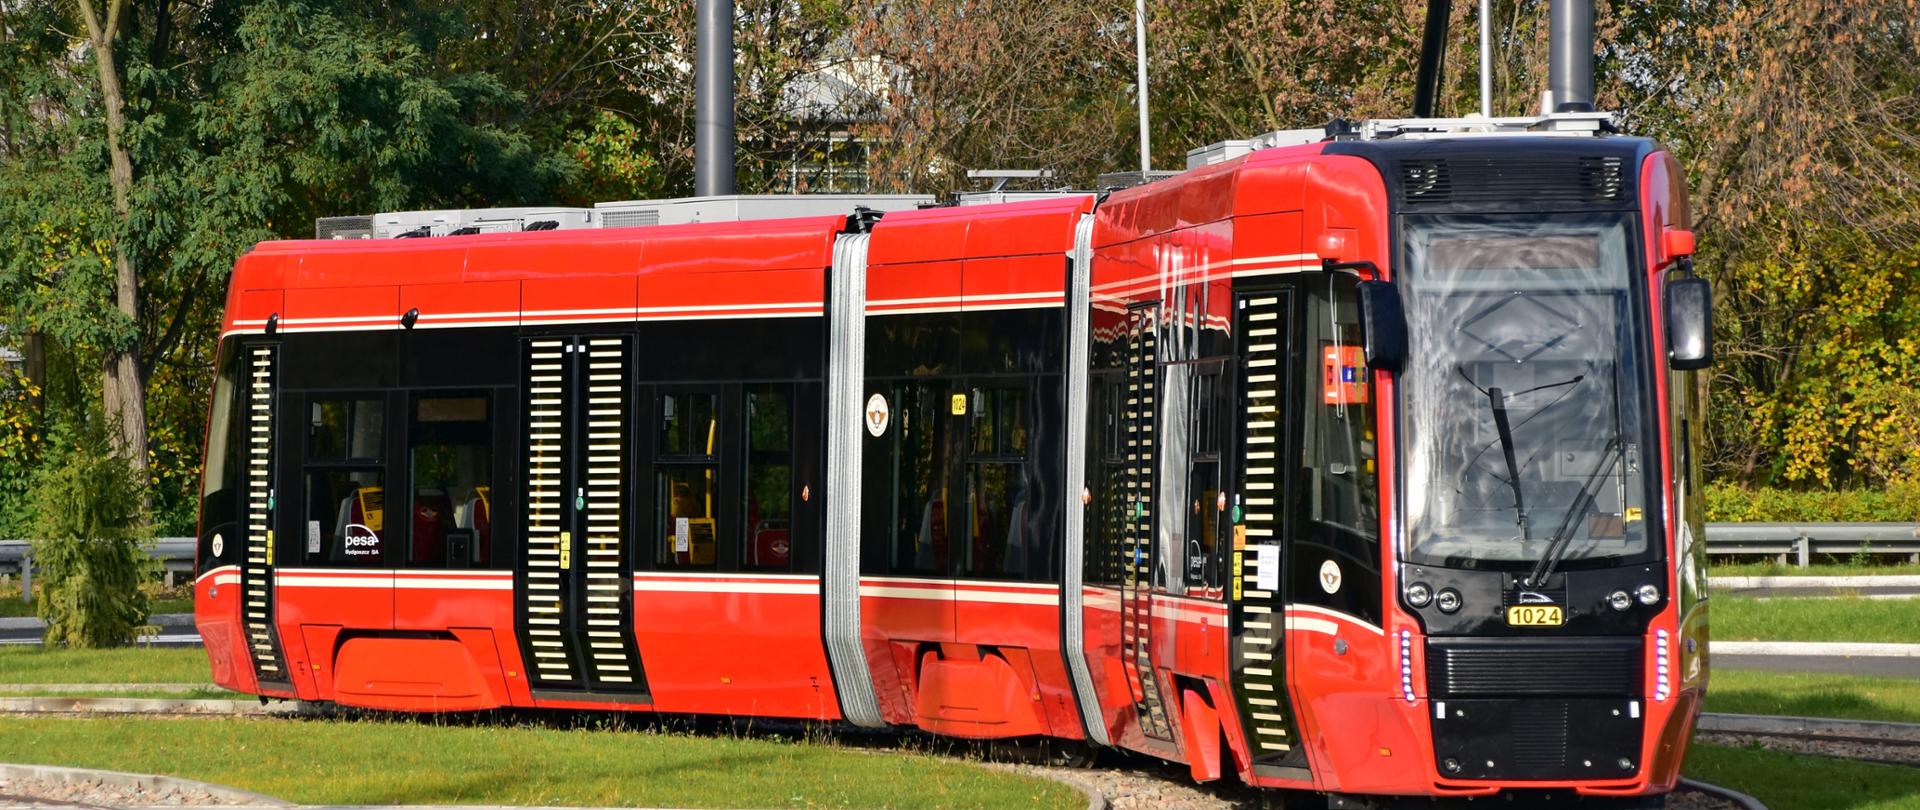 tramwaj w Katowicach